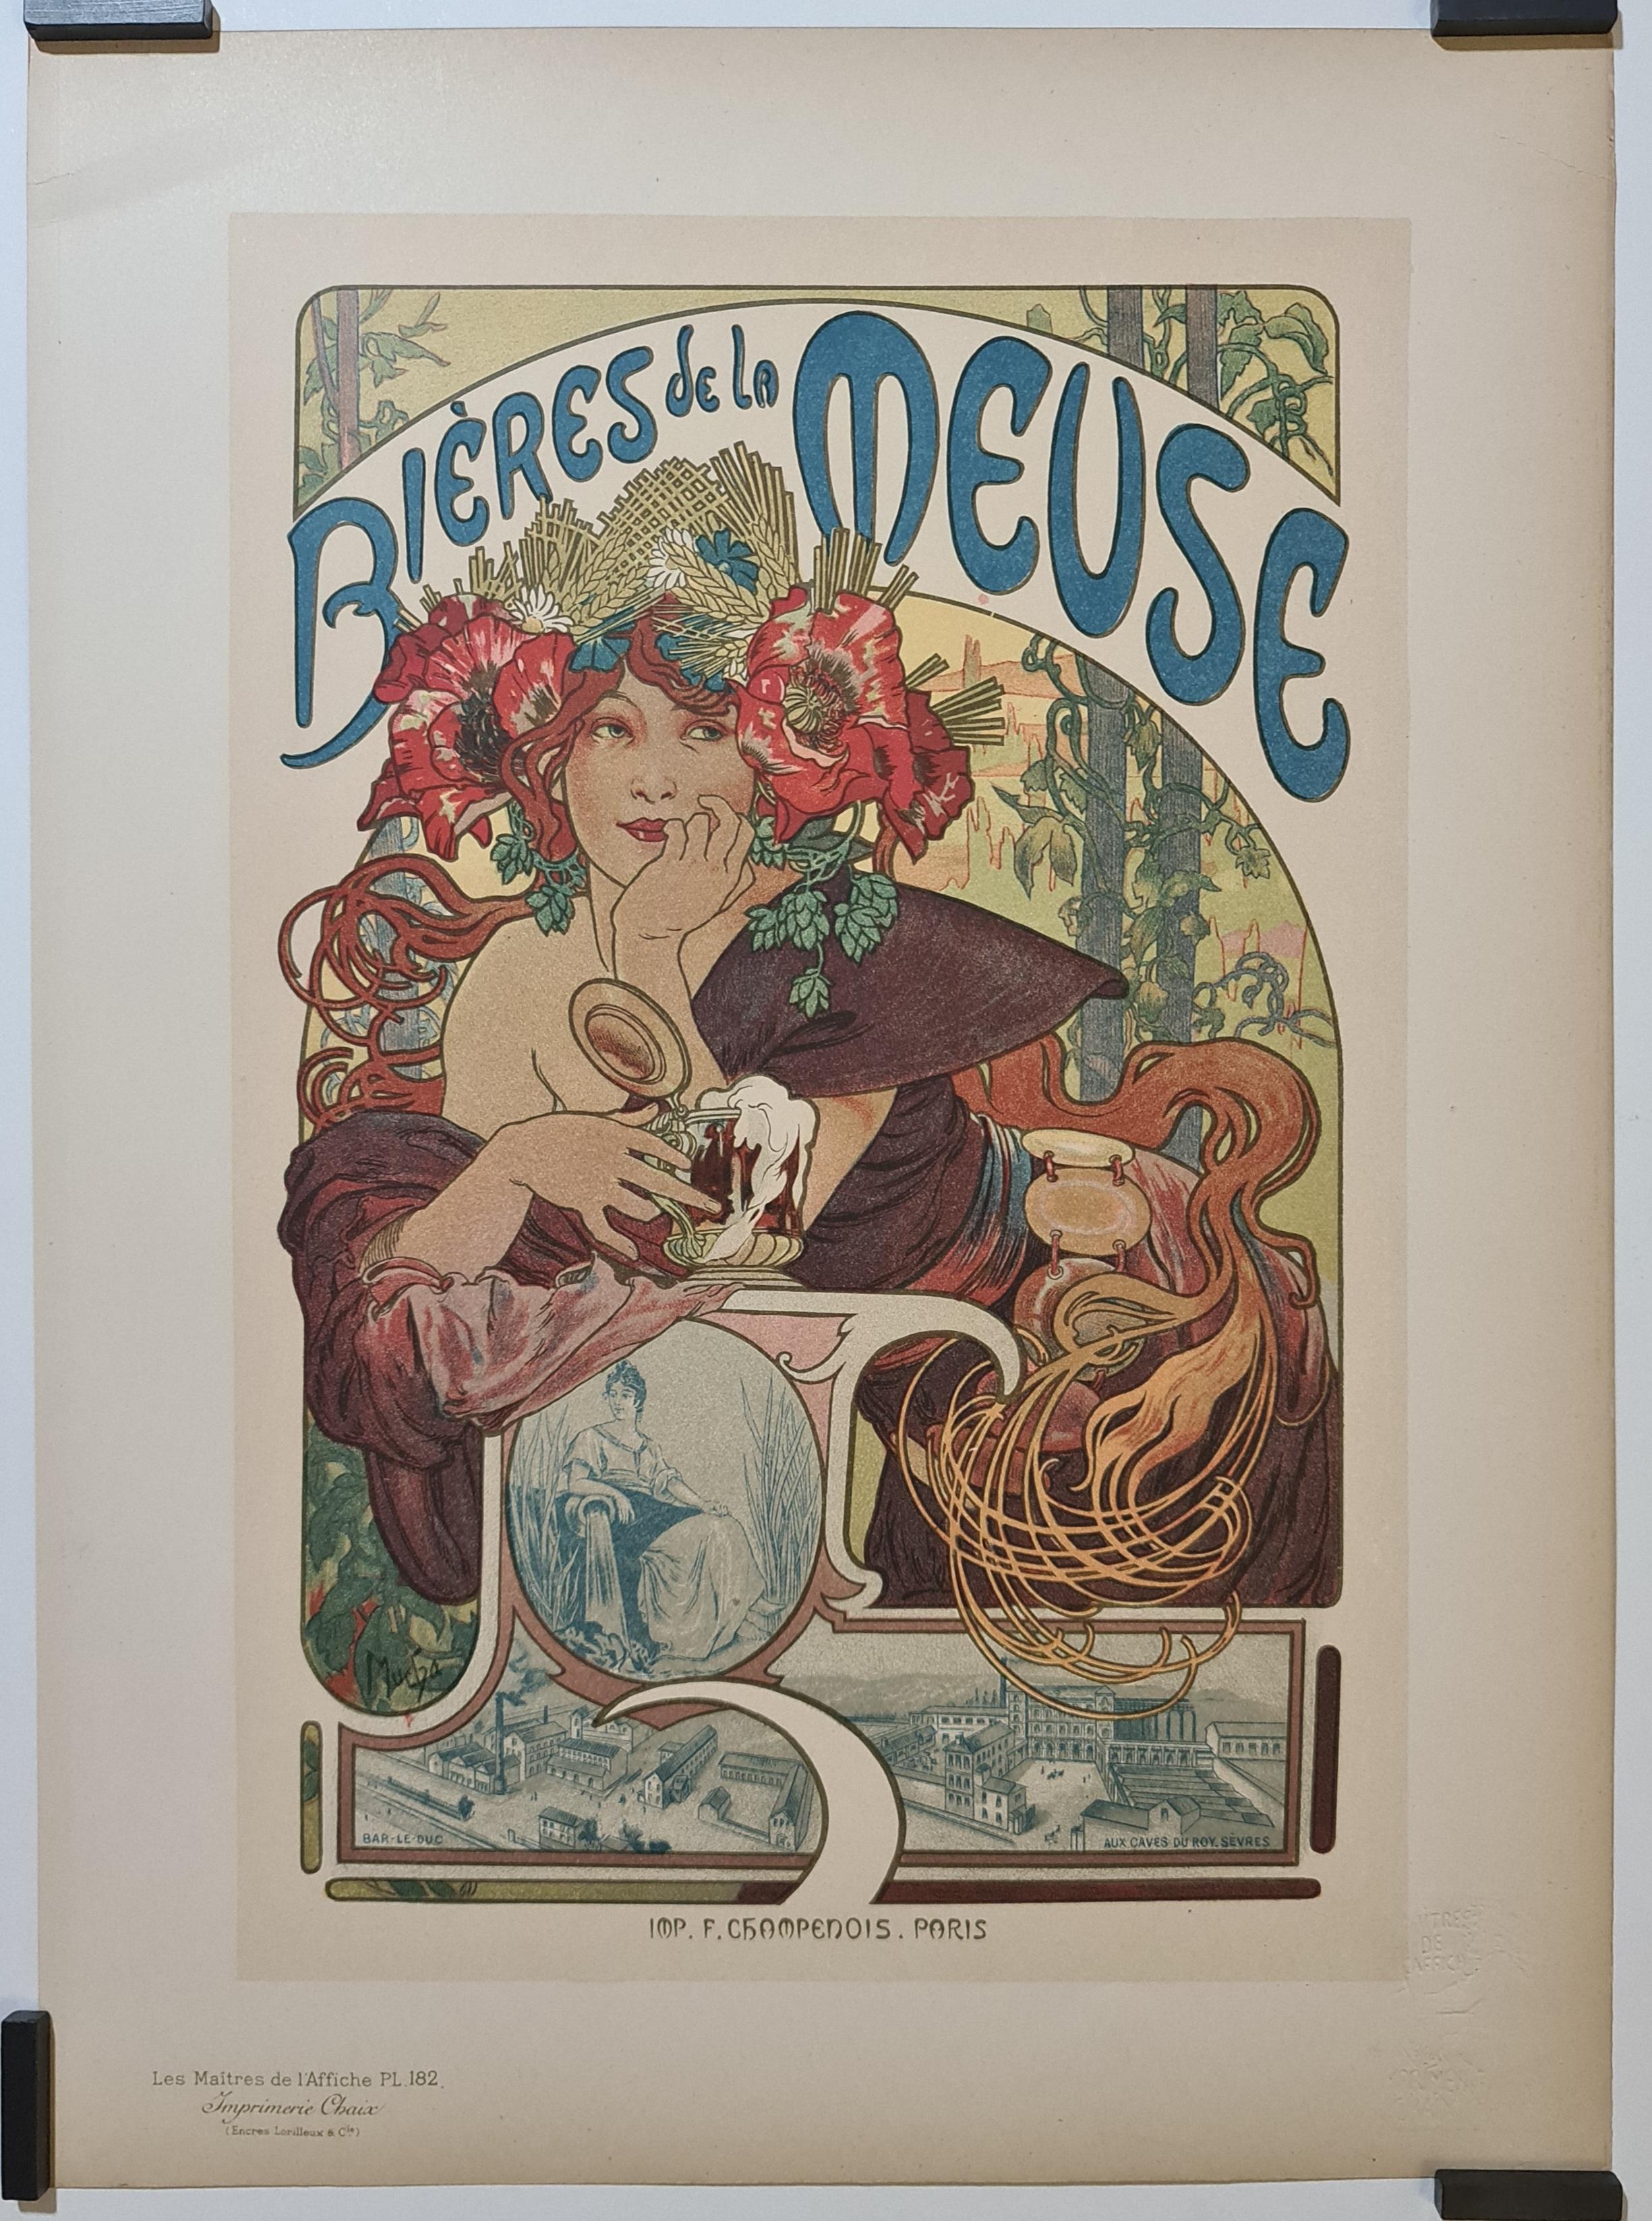 1899 Original Print by Mucha Bières de la Meuse  Les maitres de l'affiche pl 182

Les maitres de l'affiche pl. 182 - Bar le duc - Aux caves du roy Sèvres

Alcohol - Art Nouveau

Chaix